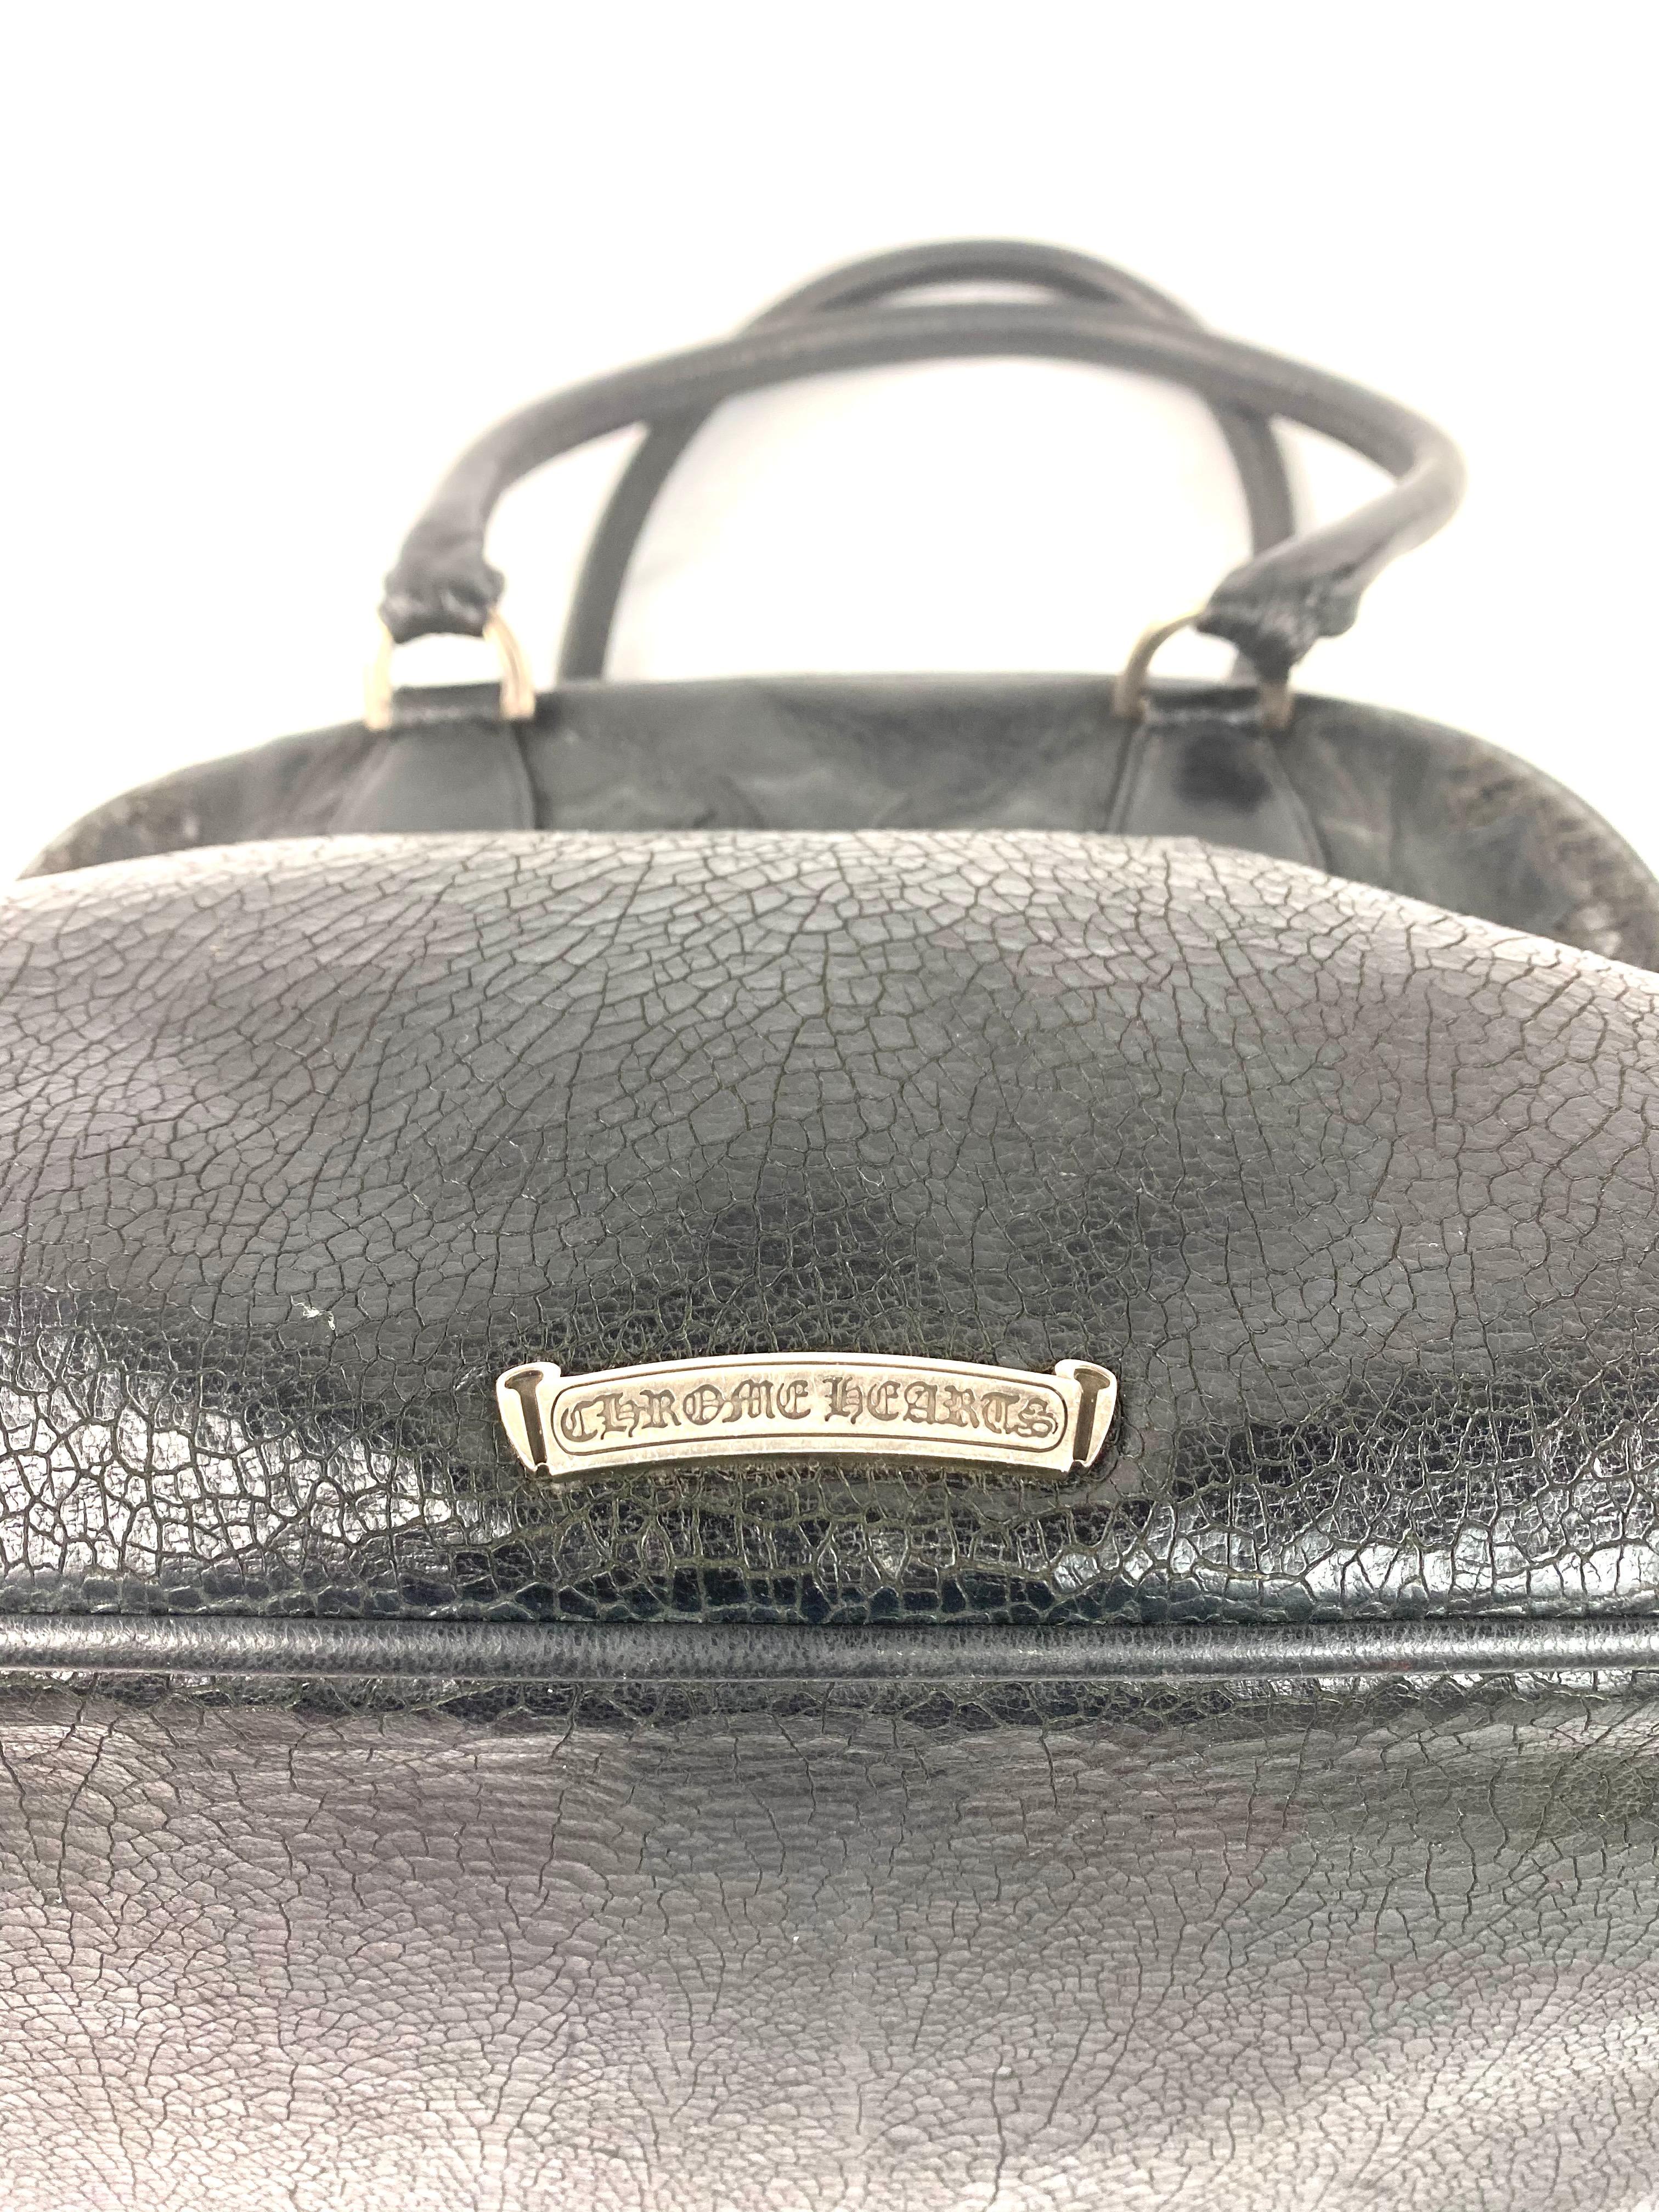 Vintage Chrome Hearts Black Leather Tote Shoulder Handbag 6